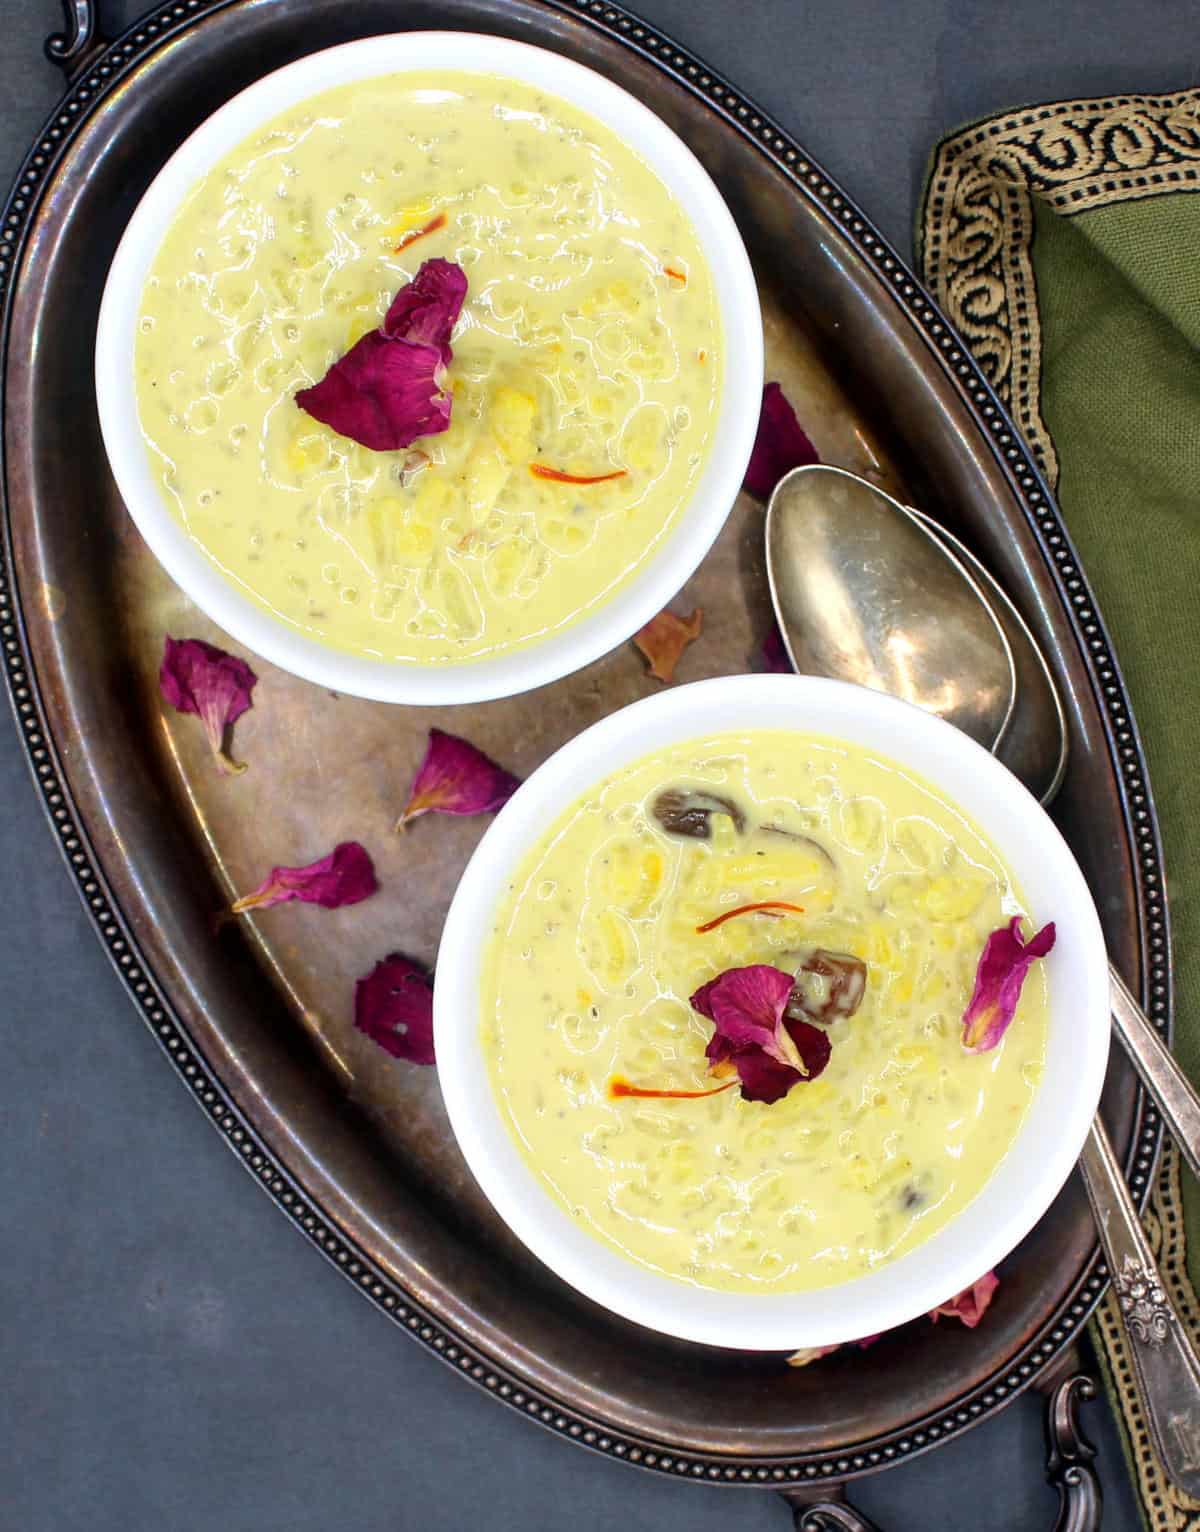 Vegan rice kheer in white bowls with rose petal garnish.